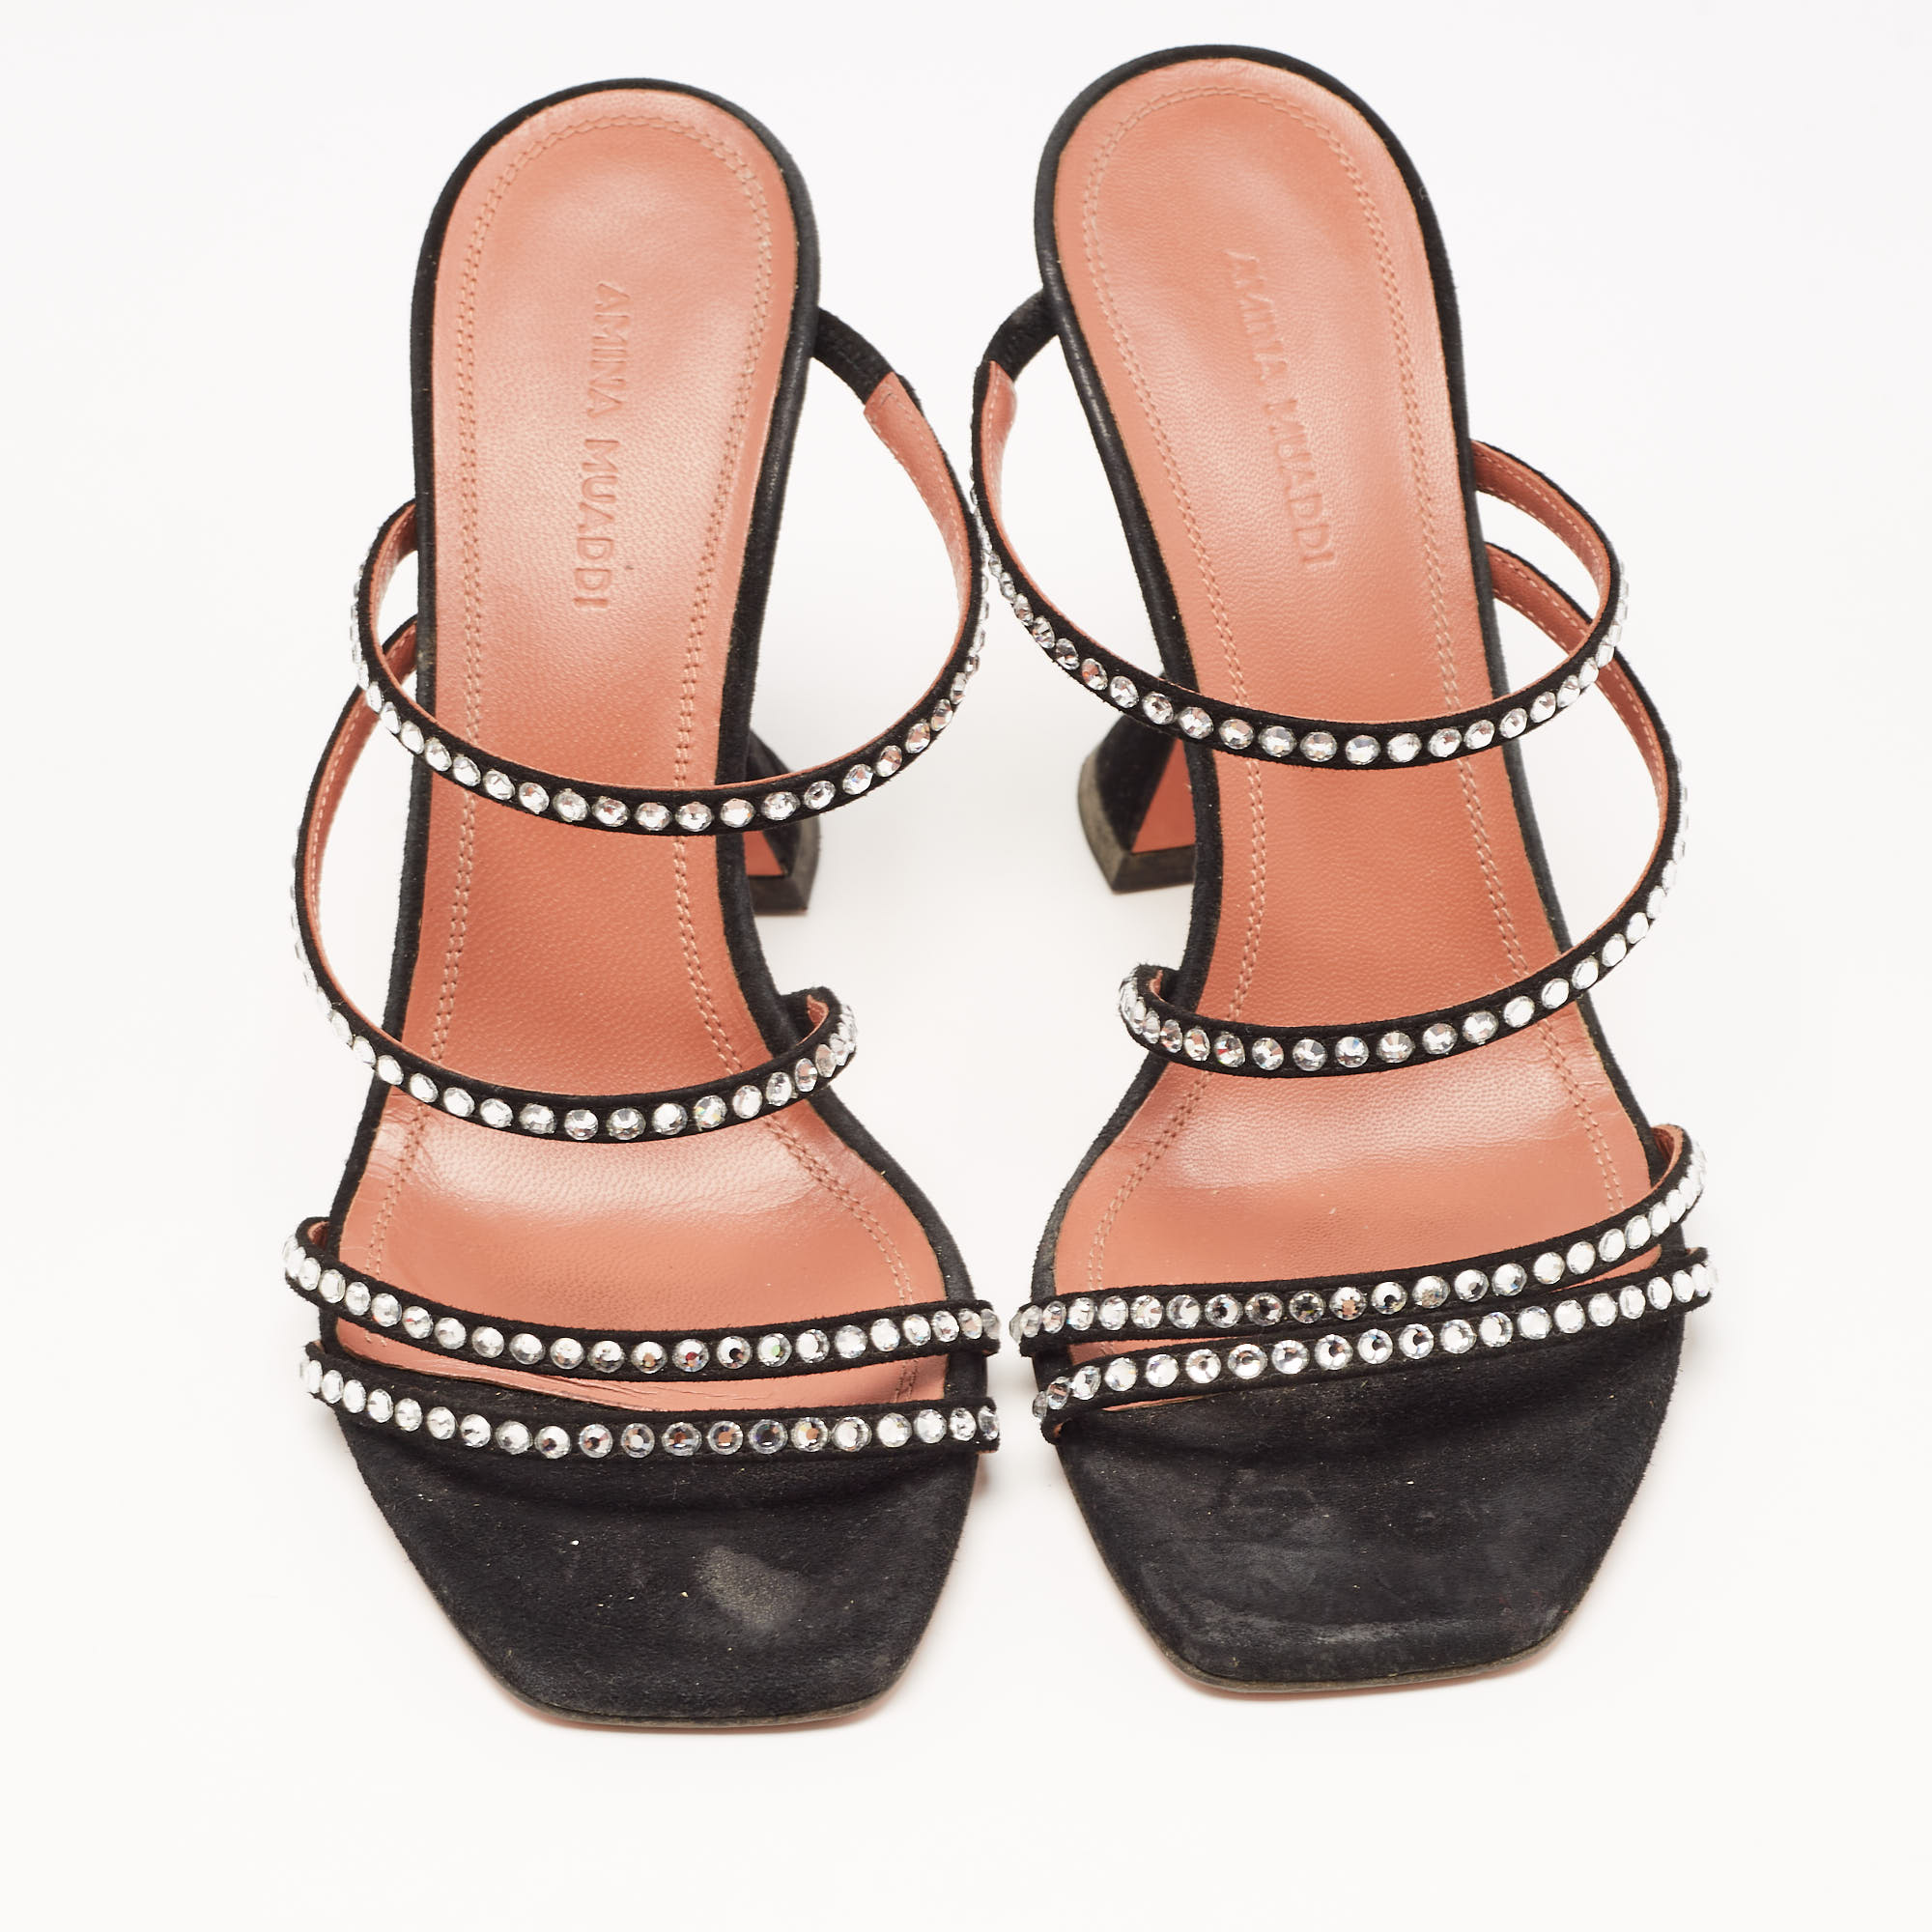 Amina Muaddi Black Crystal Embellished Suede Naima Sandals Size 37